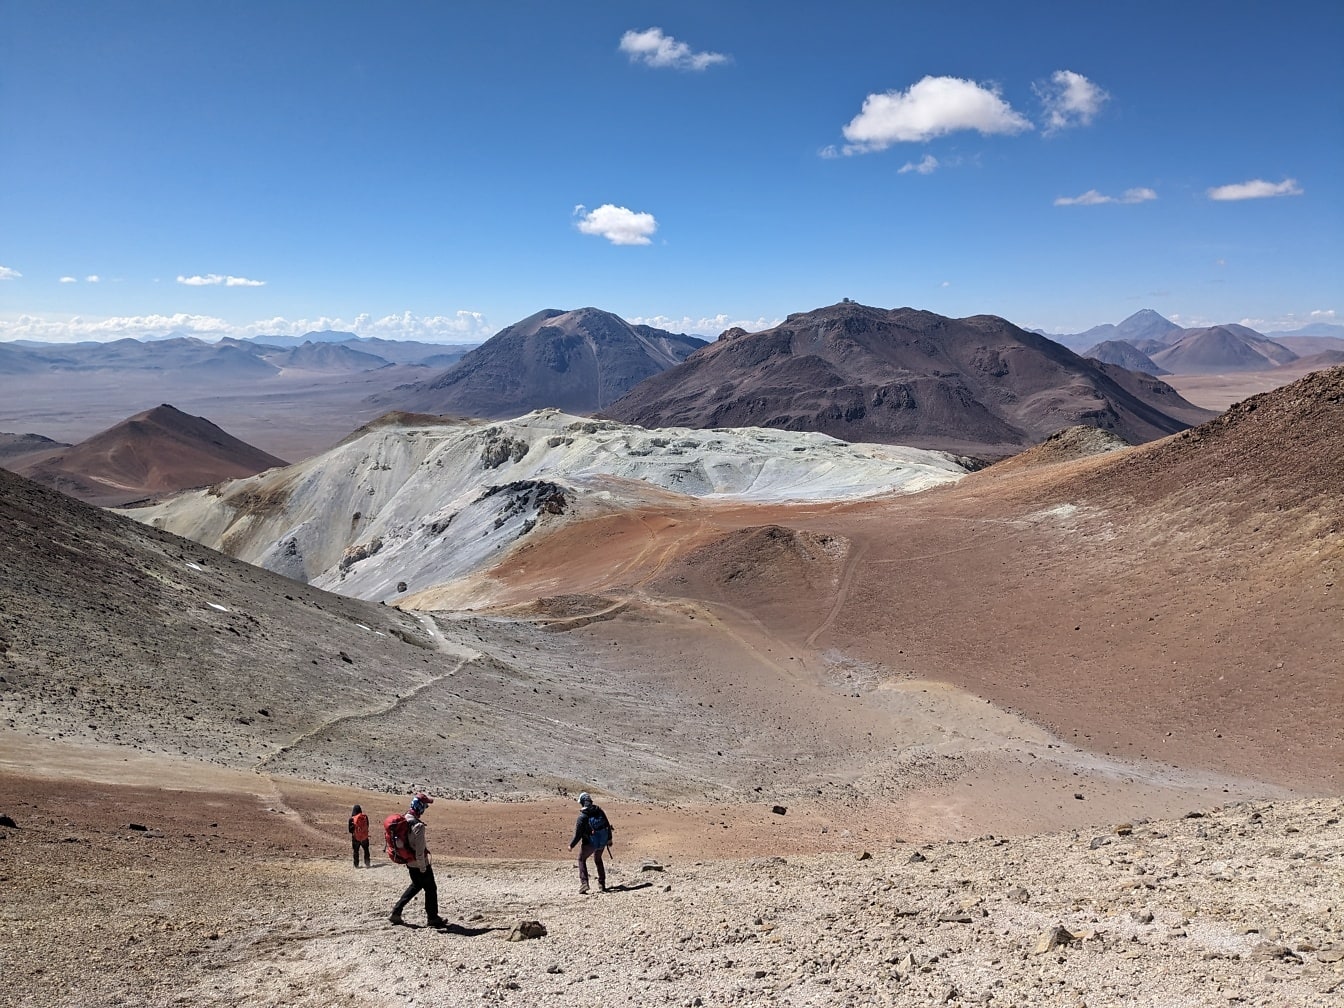 Emberek sétálnak a sivatag hegycsúcsán, a Cerro Toco-n Chilében